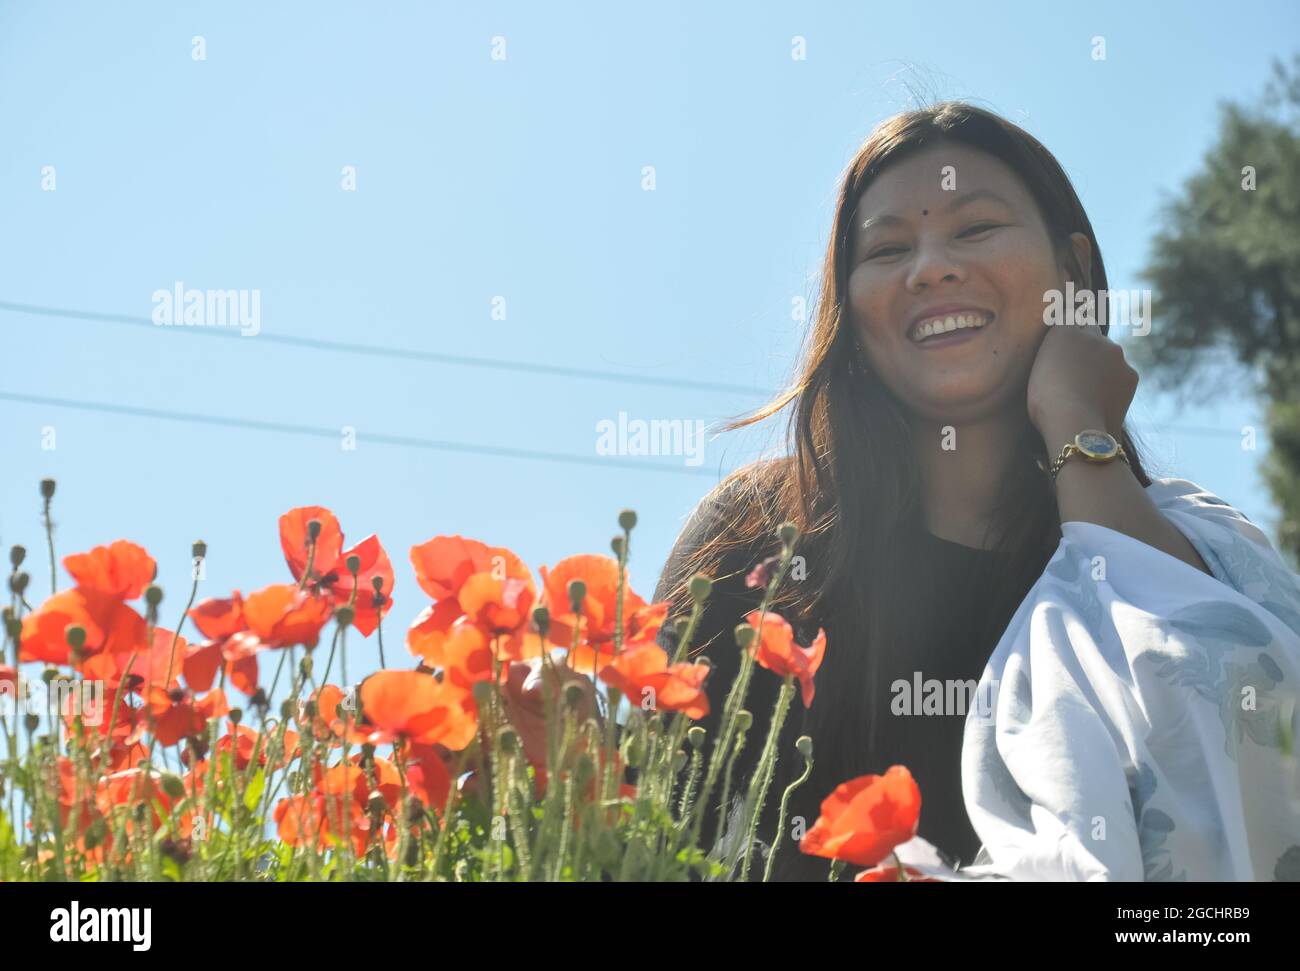 Vue en contre-plongée d'une jeune femme d'asie du Sud assise derrière des fleurs de pavot rouge en plein air avec sourire et regarder l'appareil photo Banque D'Images